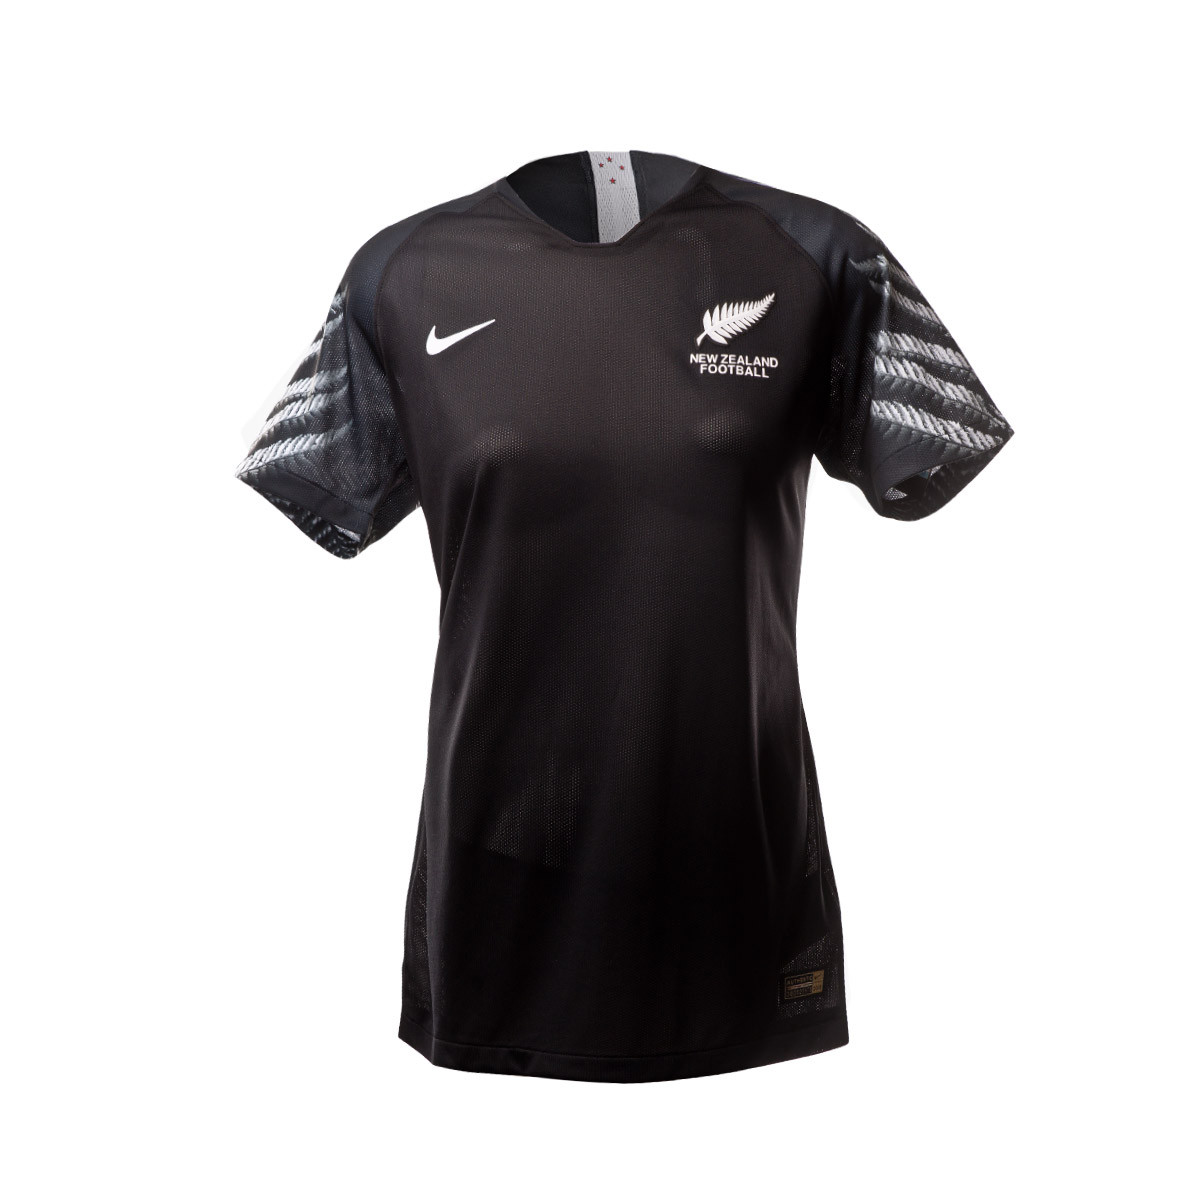 Camiseta Nike Selección Nueva Zelanda Segunda Equipación 2019-2020 Mujer  Black-Purple - Tienda de fútbol Fútbol Emotion